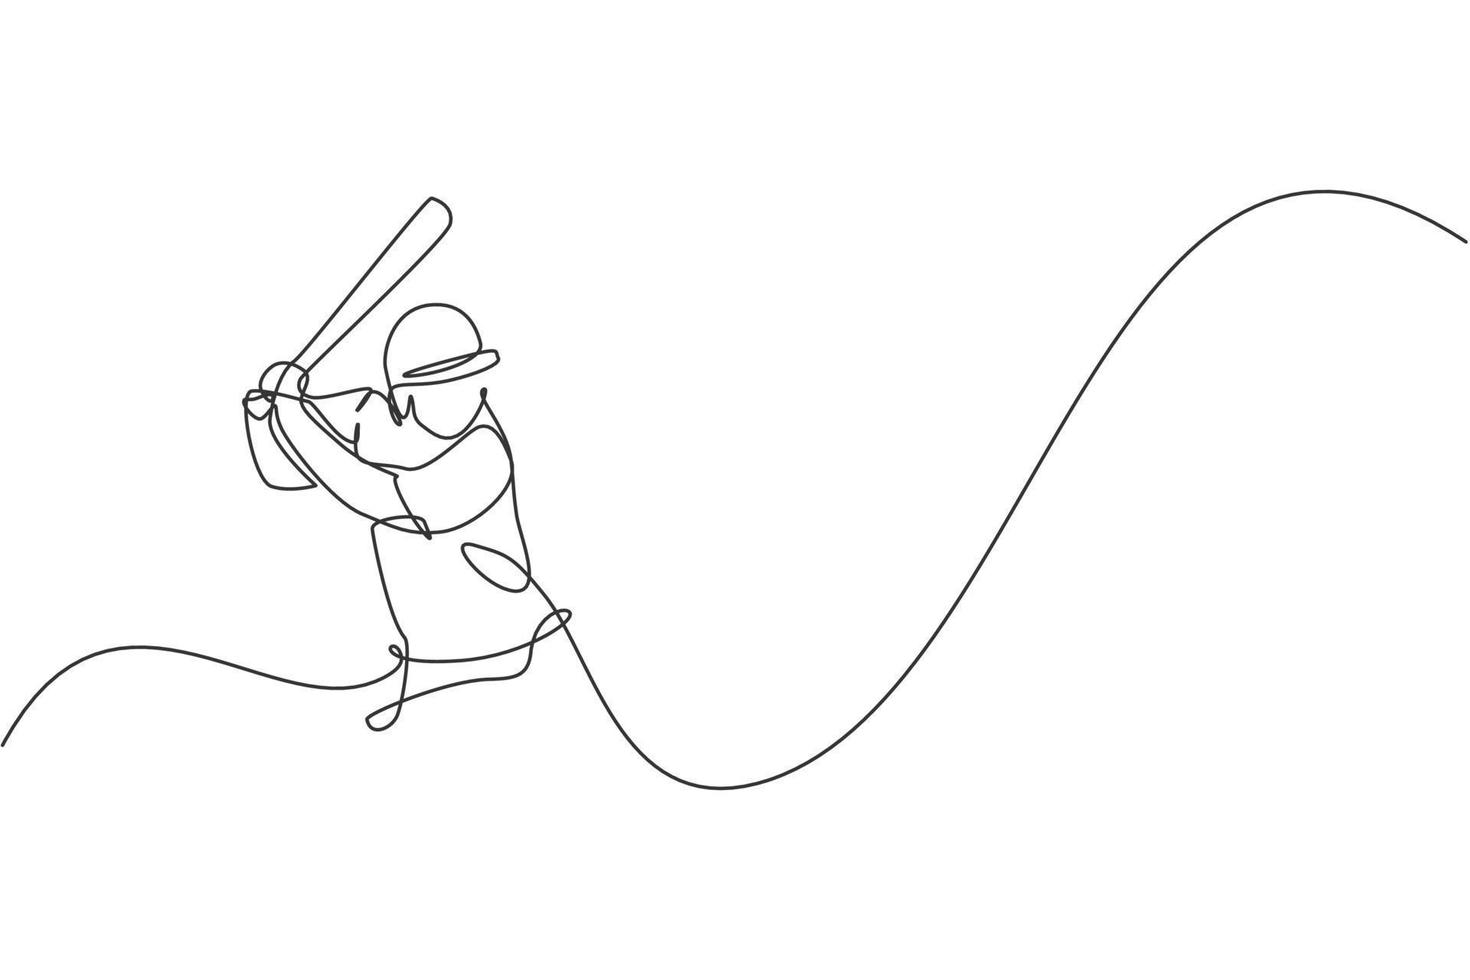 único desenho de linha contínua de prática de foco de jogador de beisebol jovem ágil para acertar a bola. conceito de exercício esportivo. ilustração vetorial de design de desenho de uma linha na moda para mídia de promoção de beisebol vetor